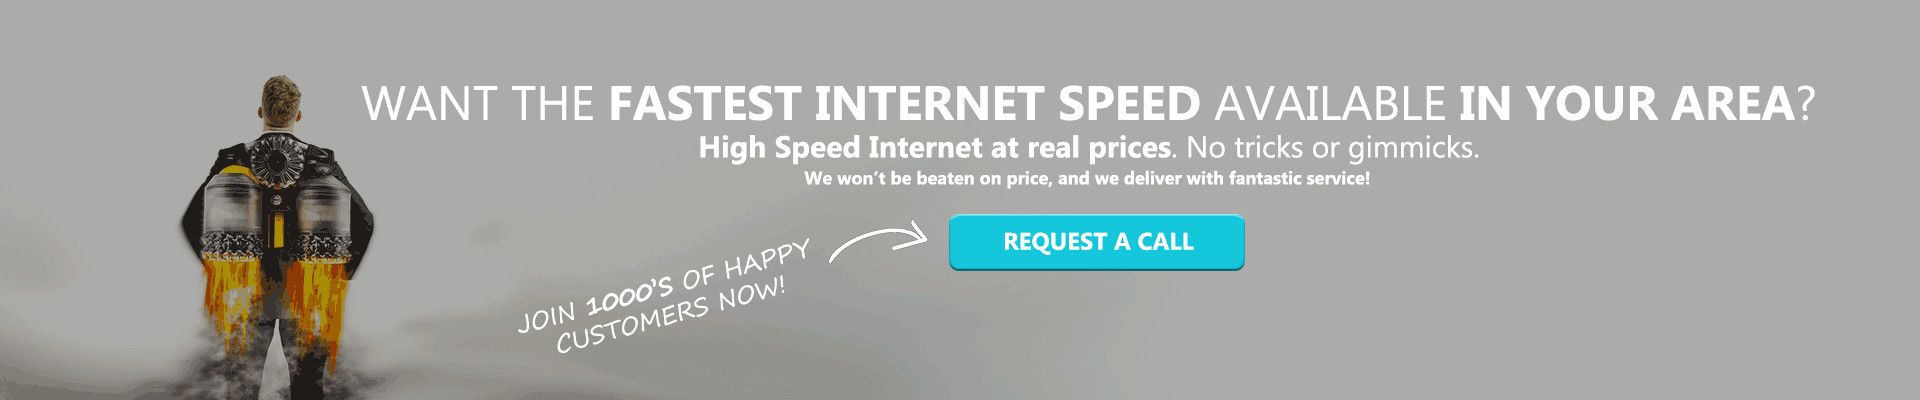 Blast off with super speed internet